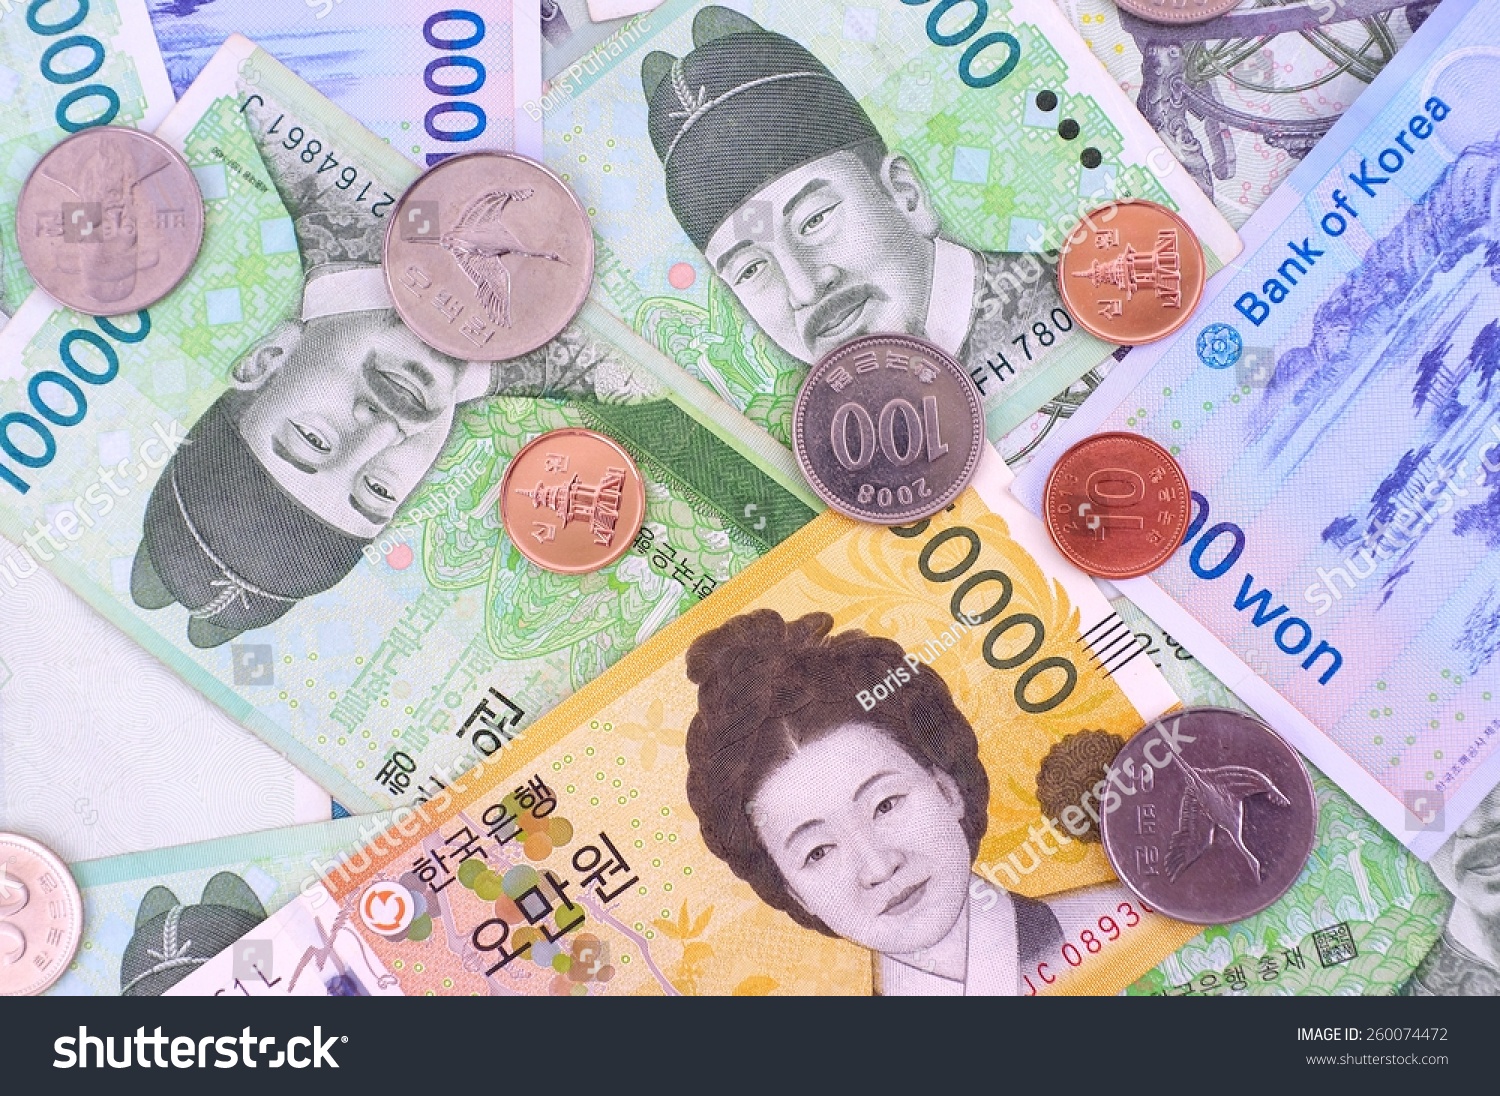 Южная корея вона к рублю на сегодня. Денежная валюта Южной Кореи. Вона Южной Кореи. Корейские воны купюры. Корейские деньги вон.